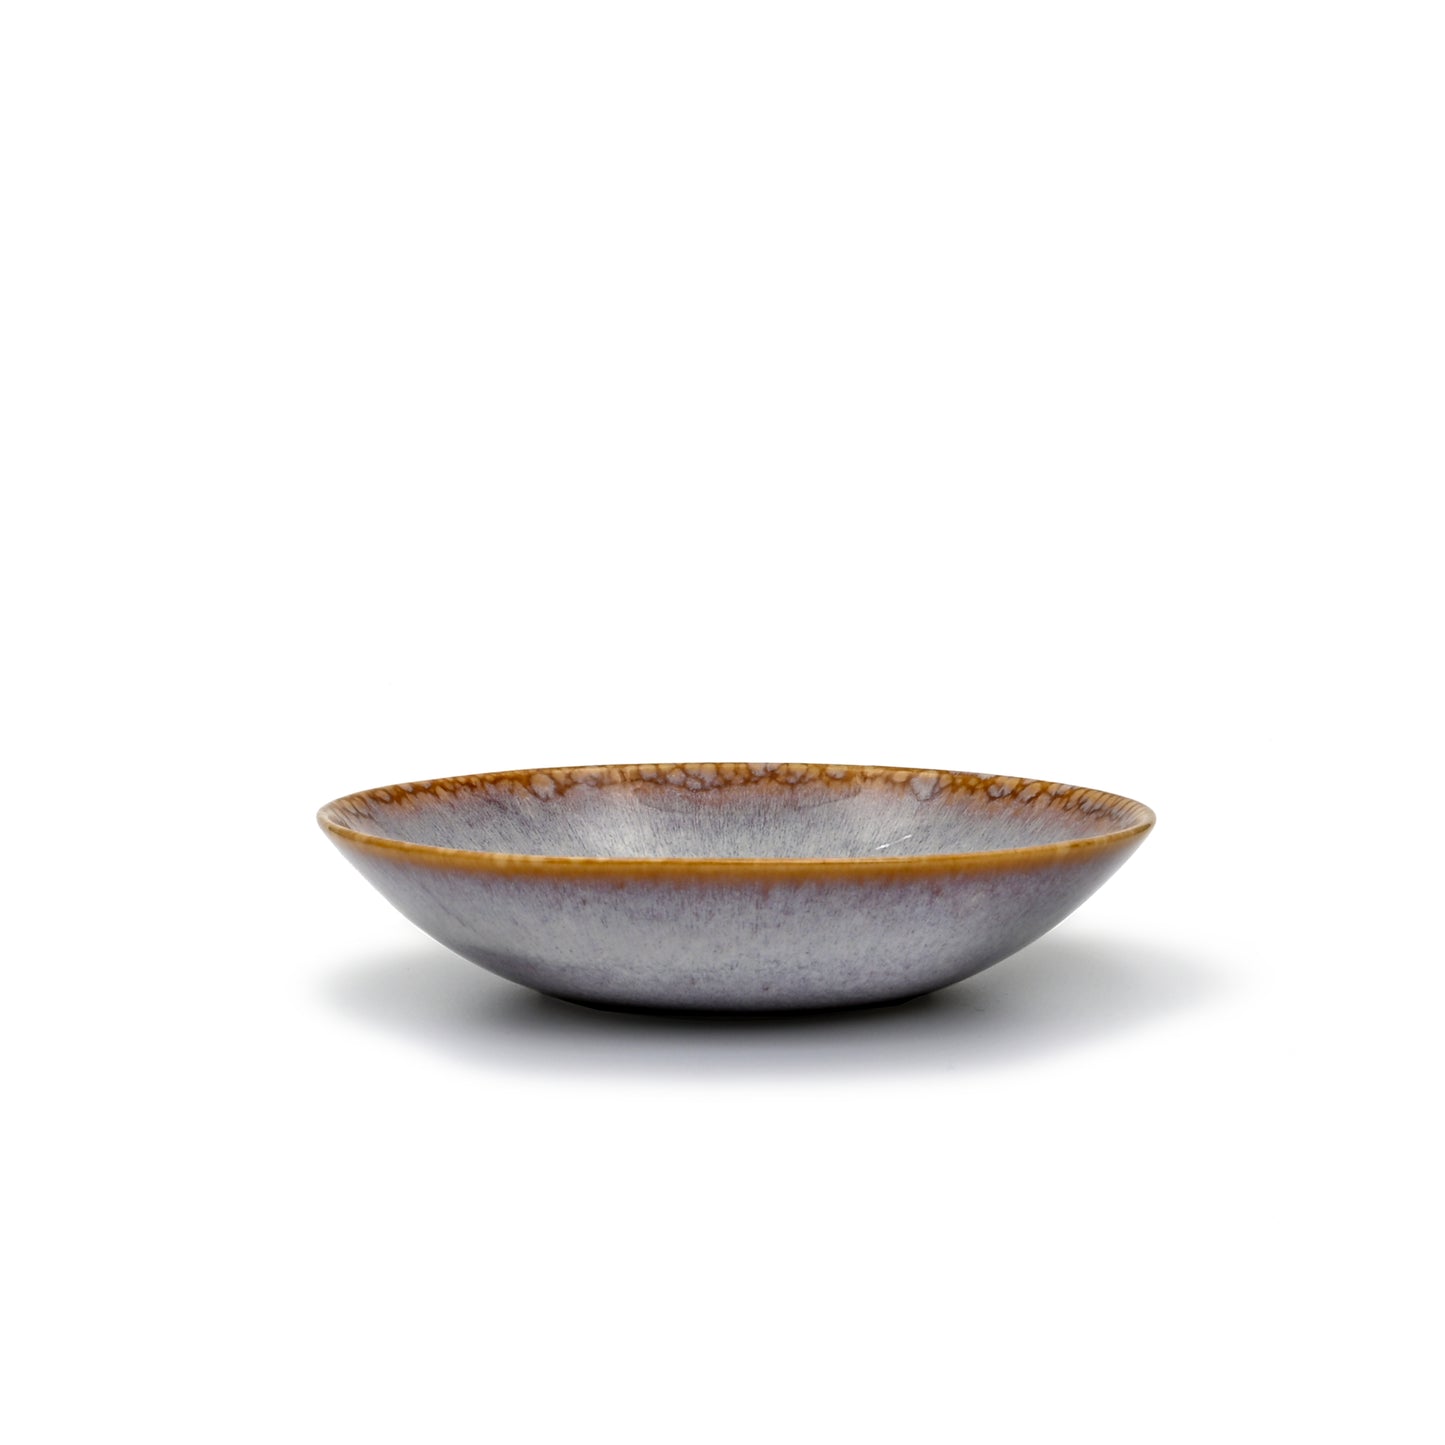 vue de profil, assiette creuse en grès naturel avec émail réactif ambre et violet subtil